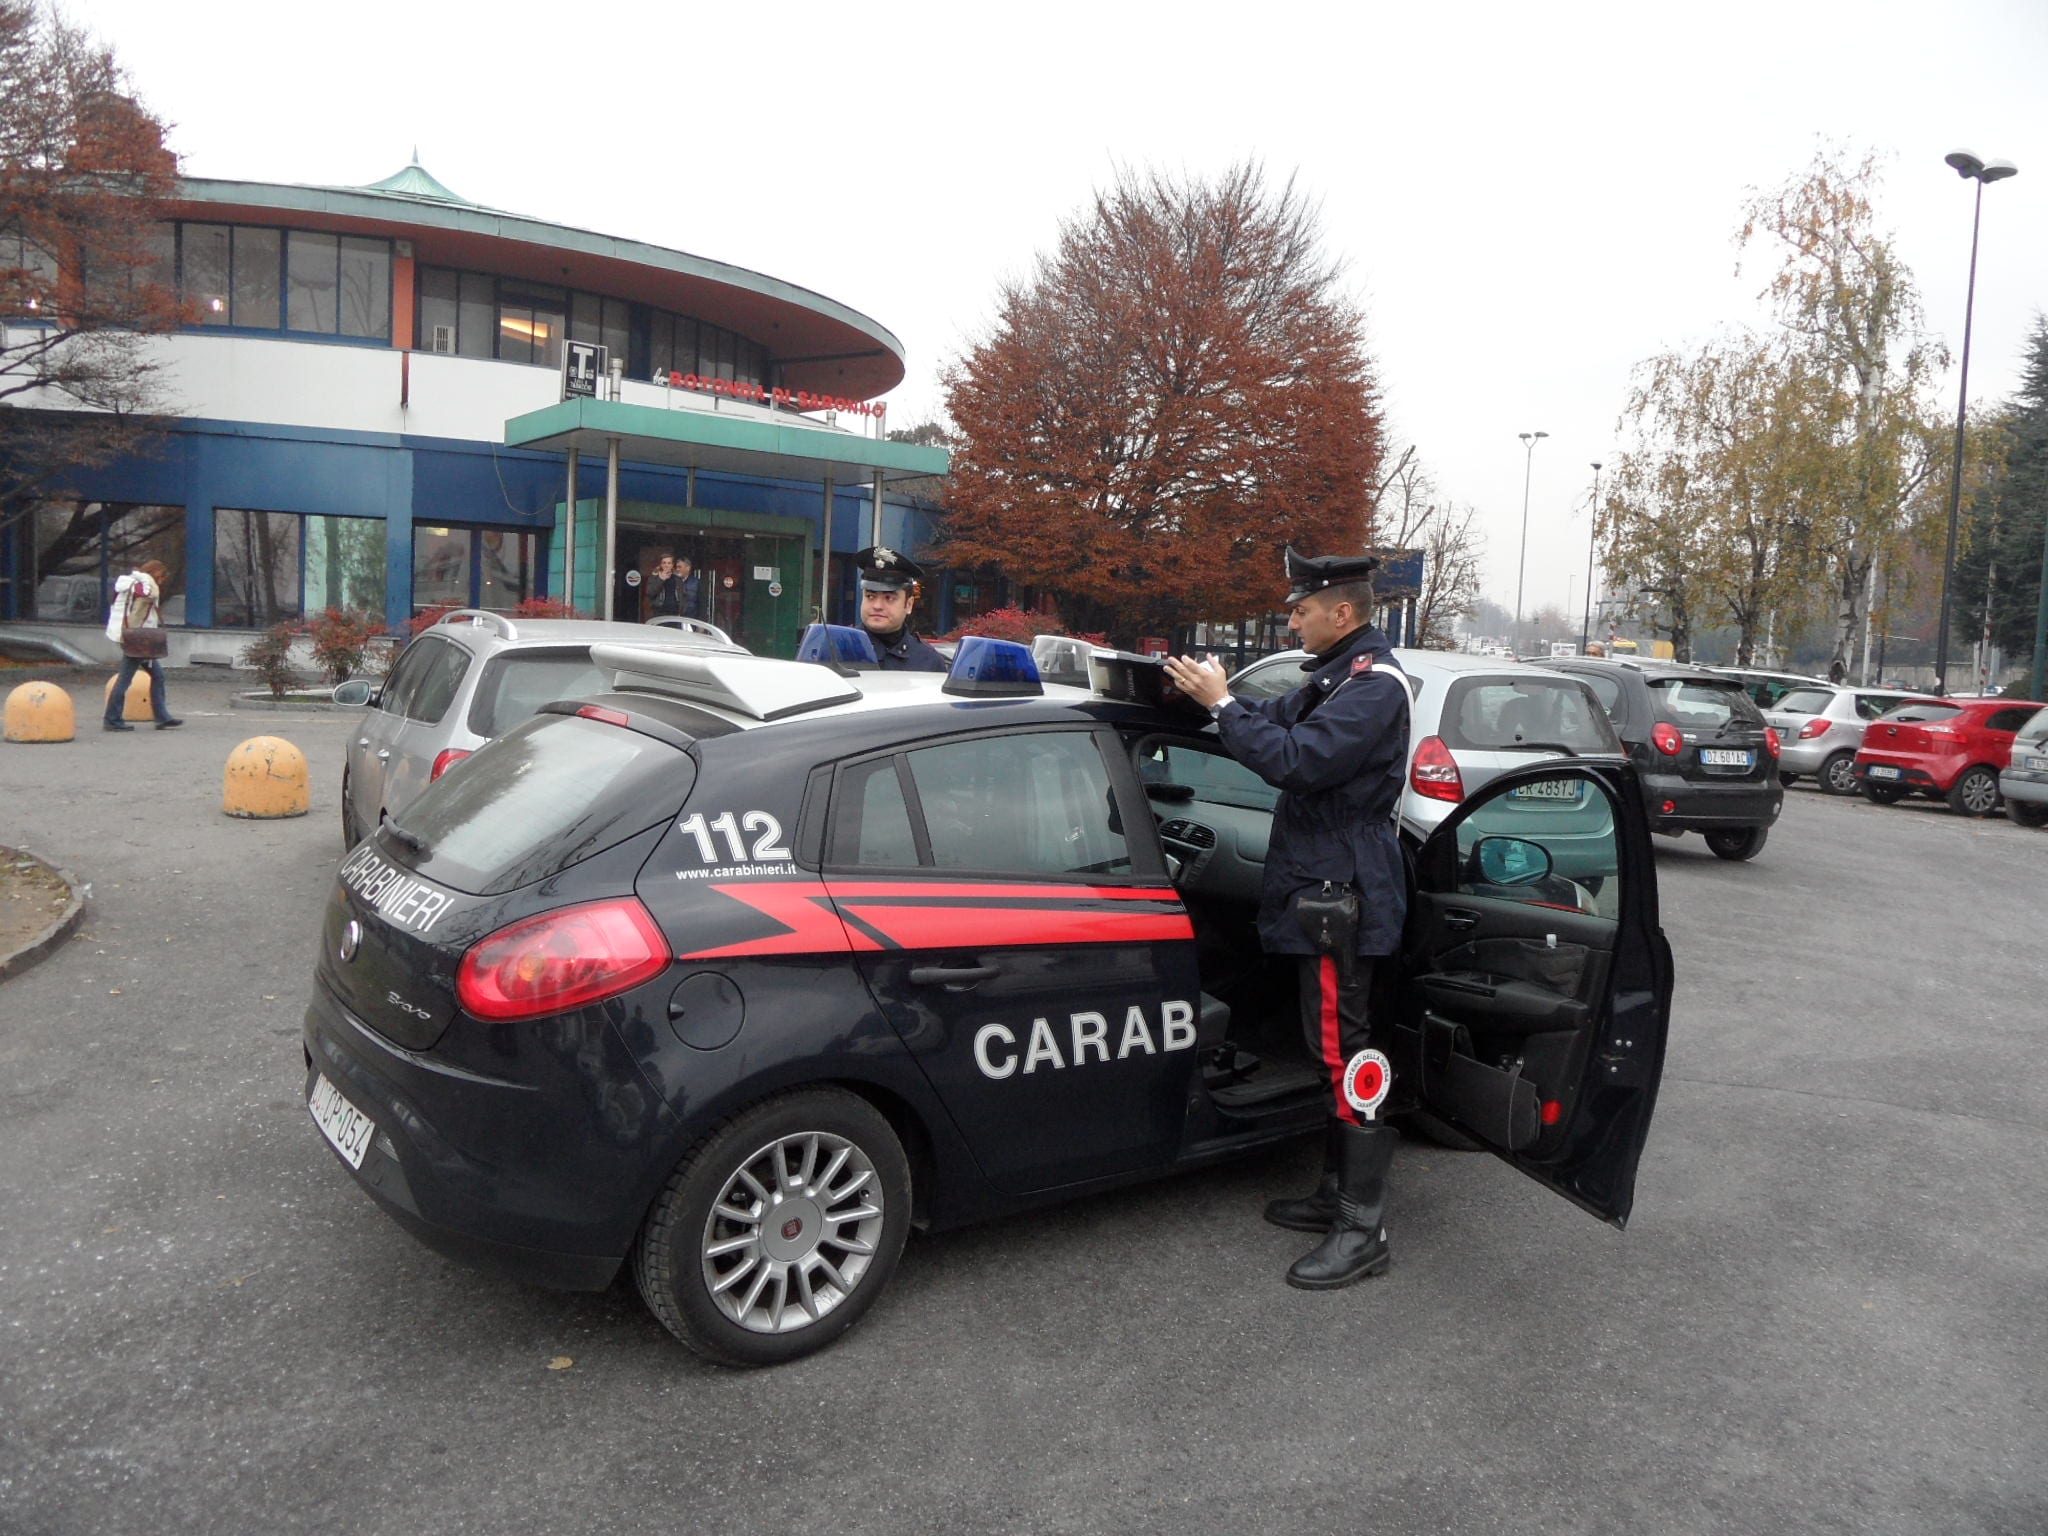 Traffico rallentato per incidente in via Lazzaroni a Saronno; pedone investito a Limbiate